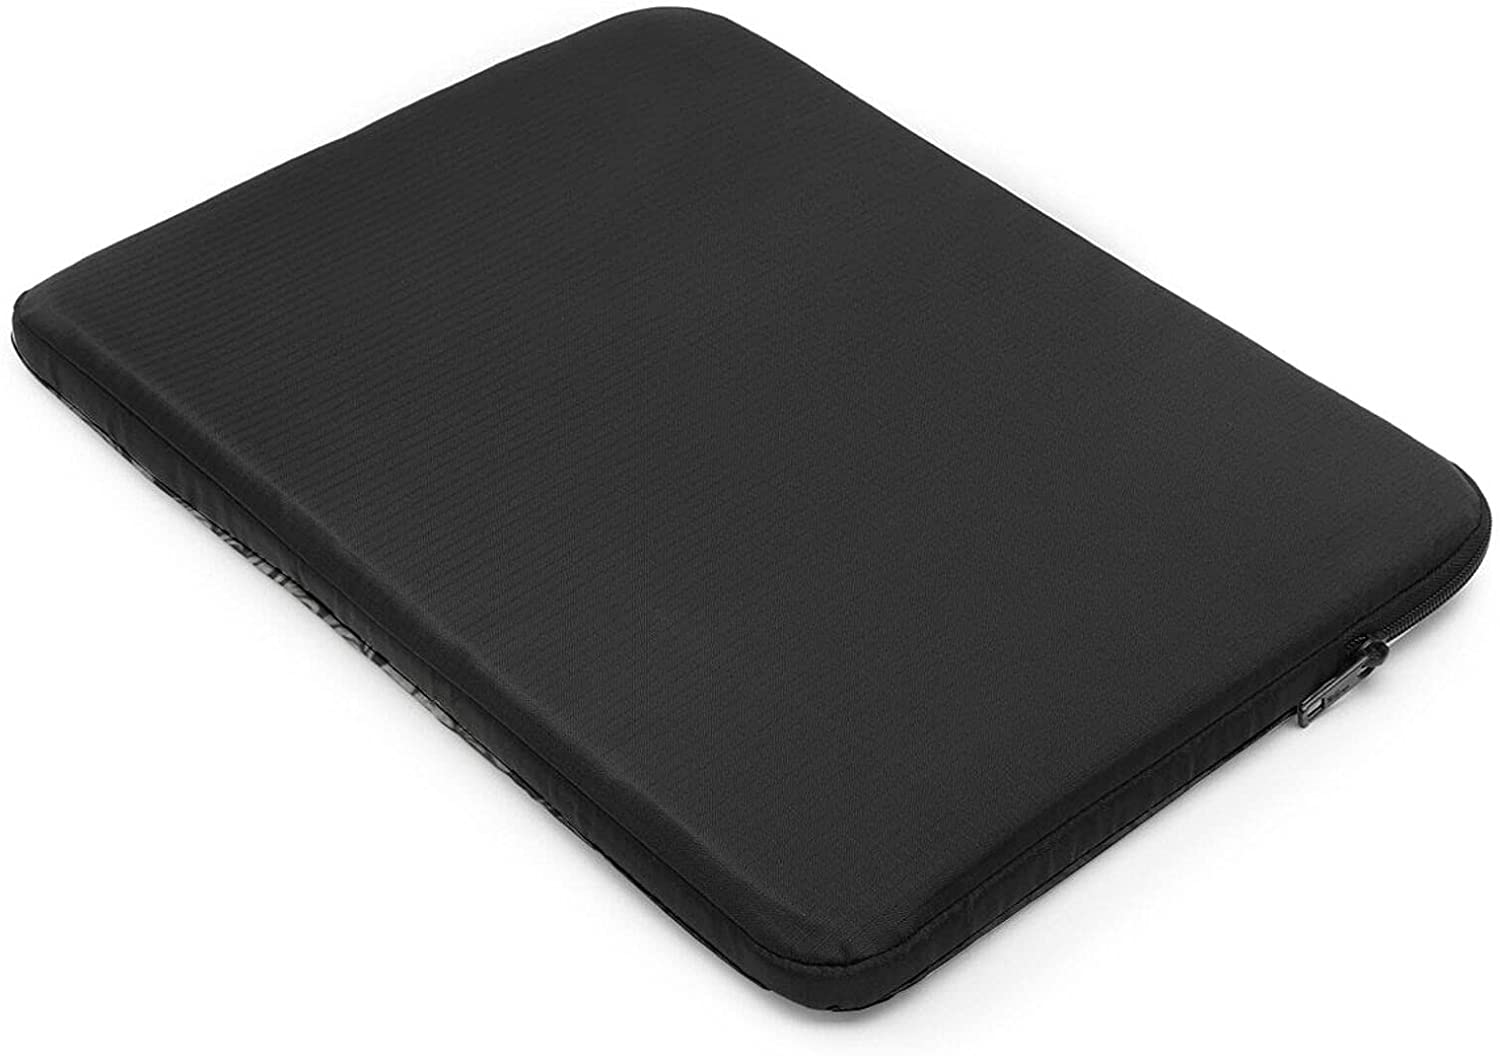 Custom Black Laptop Sleeve case 17 inches for Women Men Bag